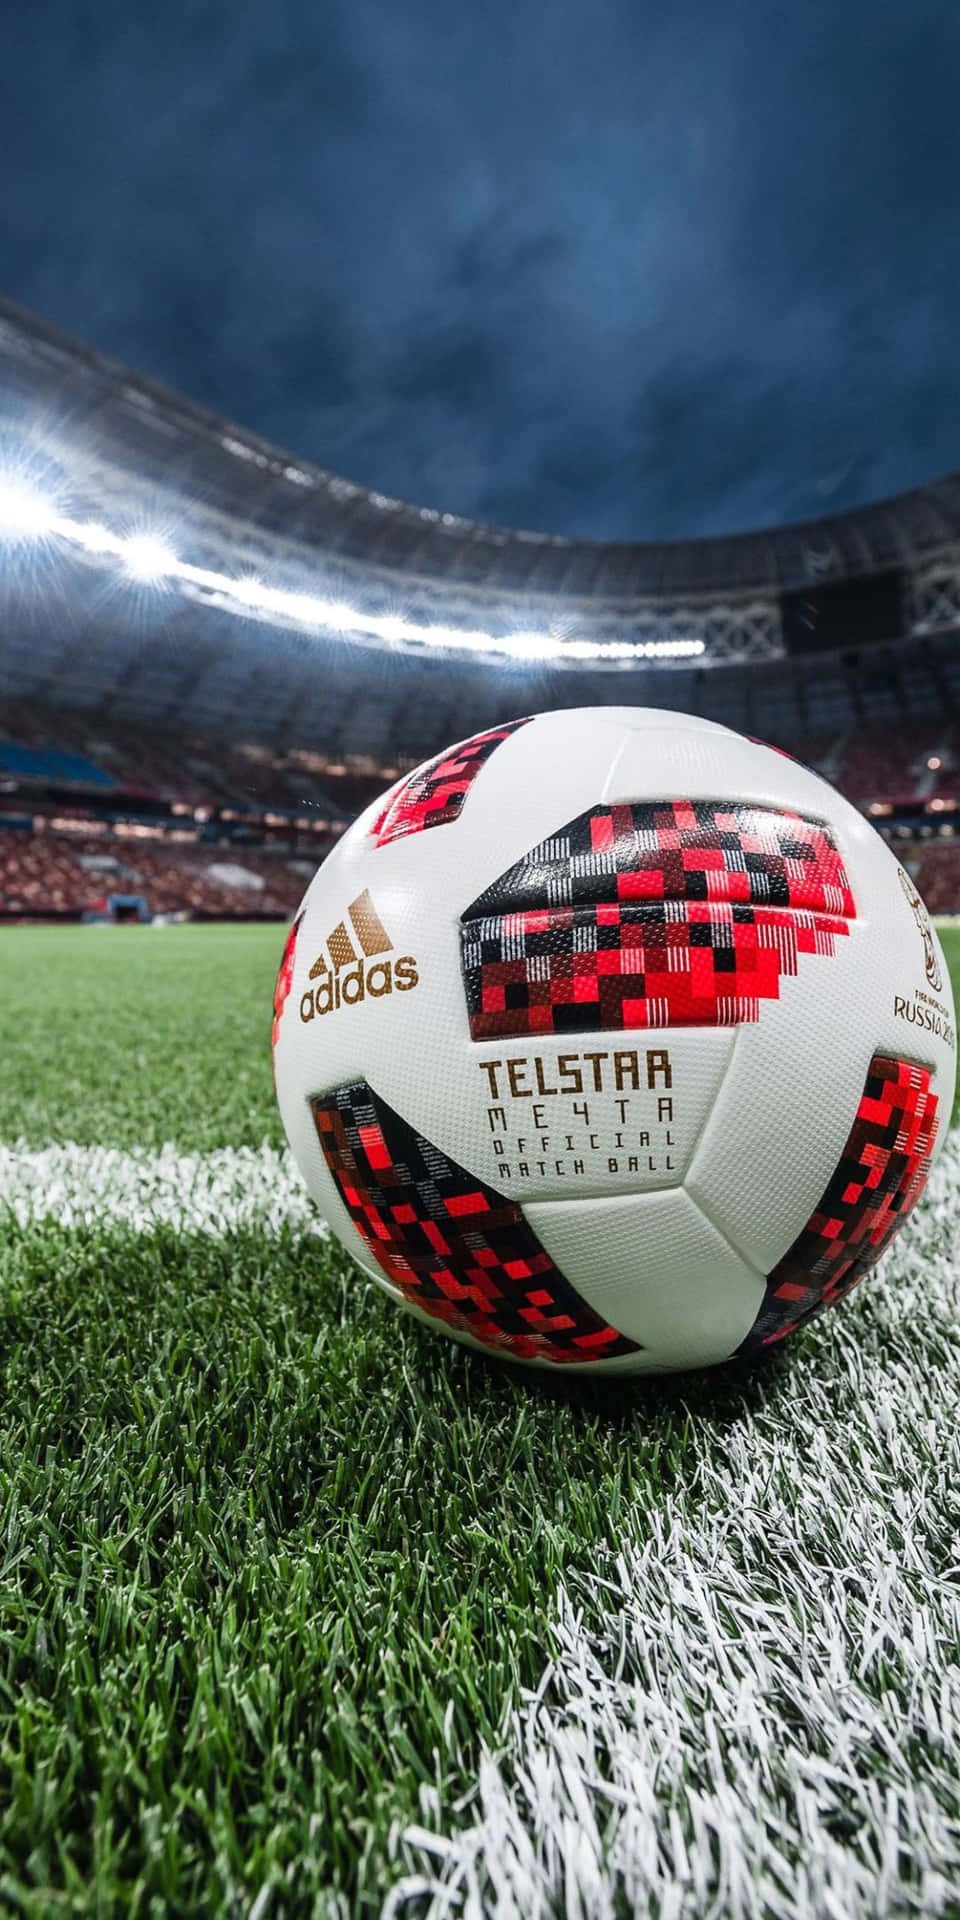 Telstarmechta Boll Pixel 3 Fotbolls Bakgrundsbild.